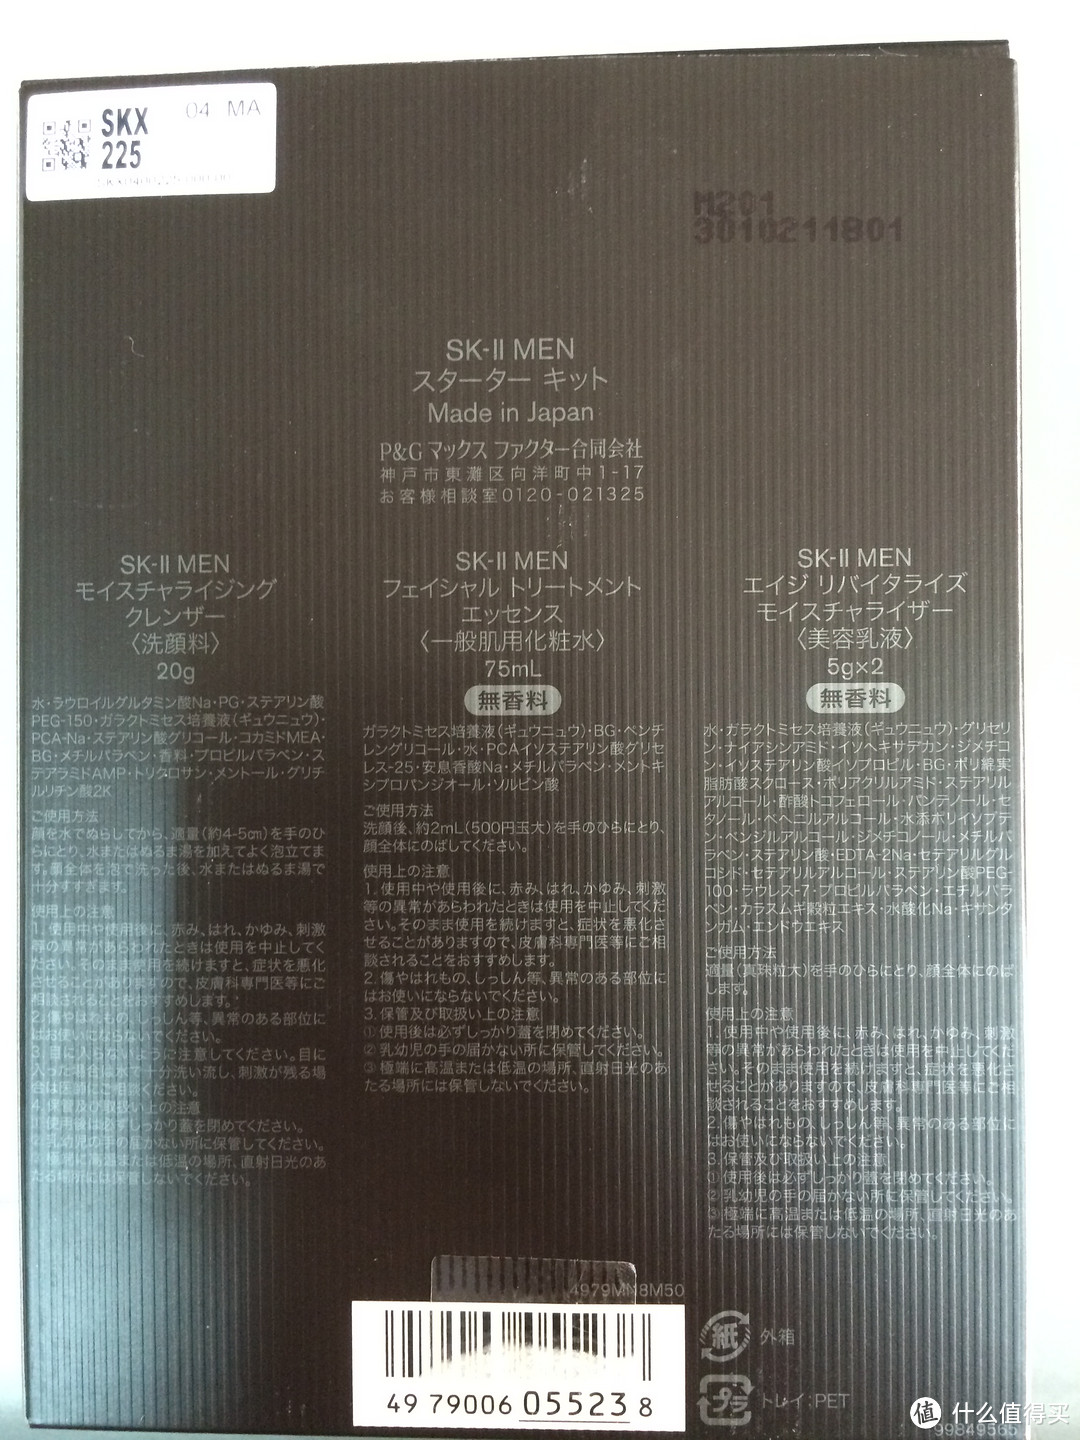 汉子的护肤路：ebay入手SK-II 男士神仙水 对比国行，顺便晒晒限量版神仙水及GF高夫新品